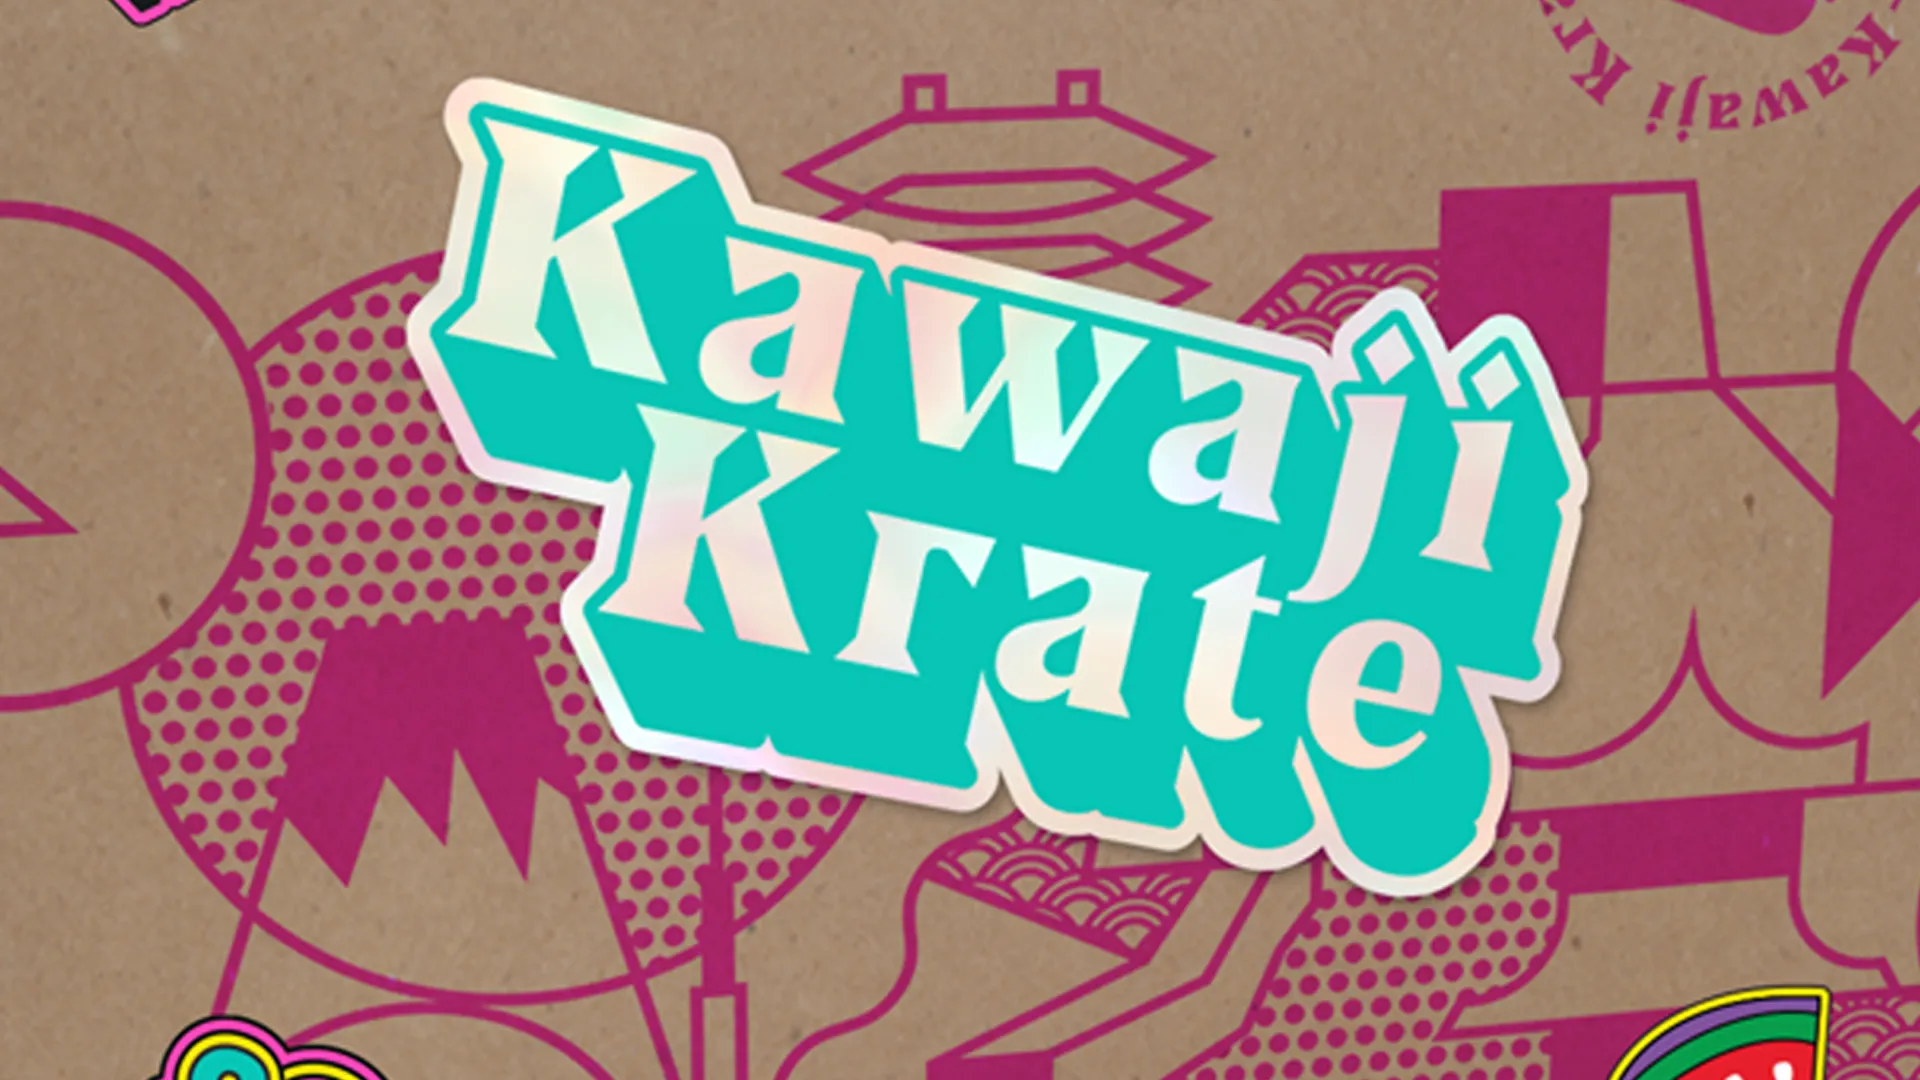 Kawaji Krate